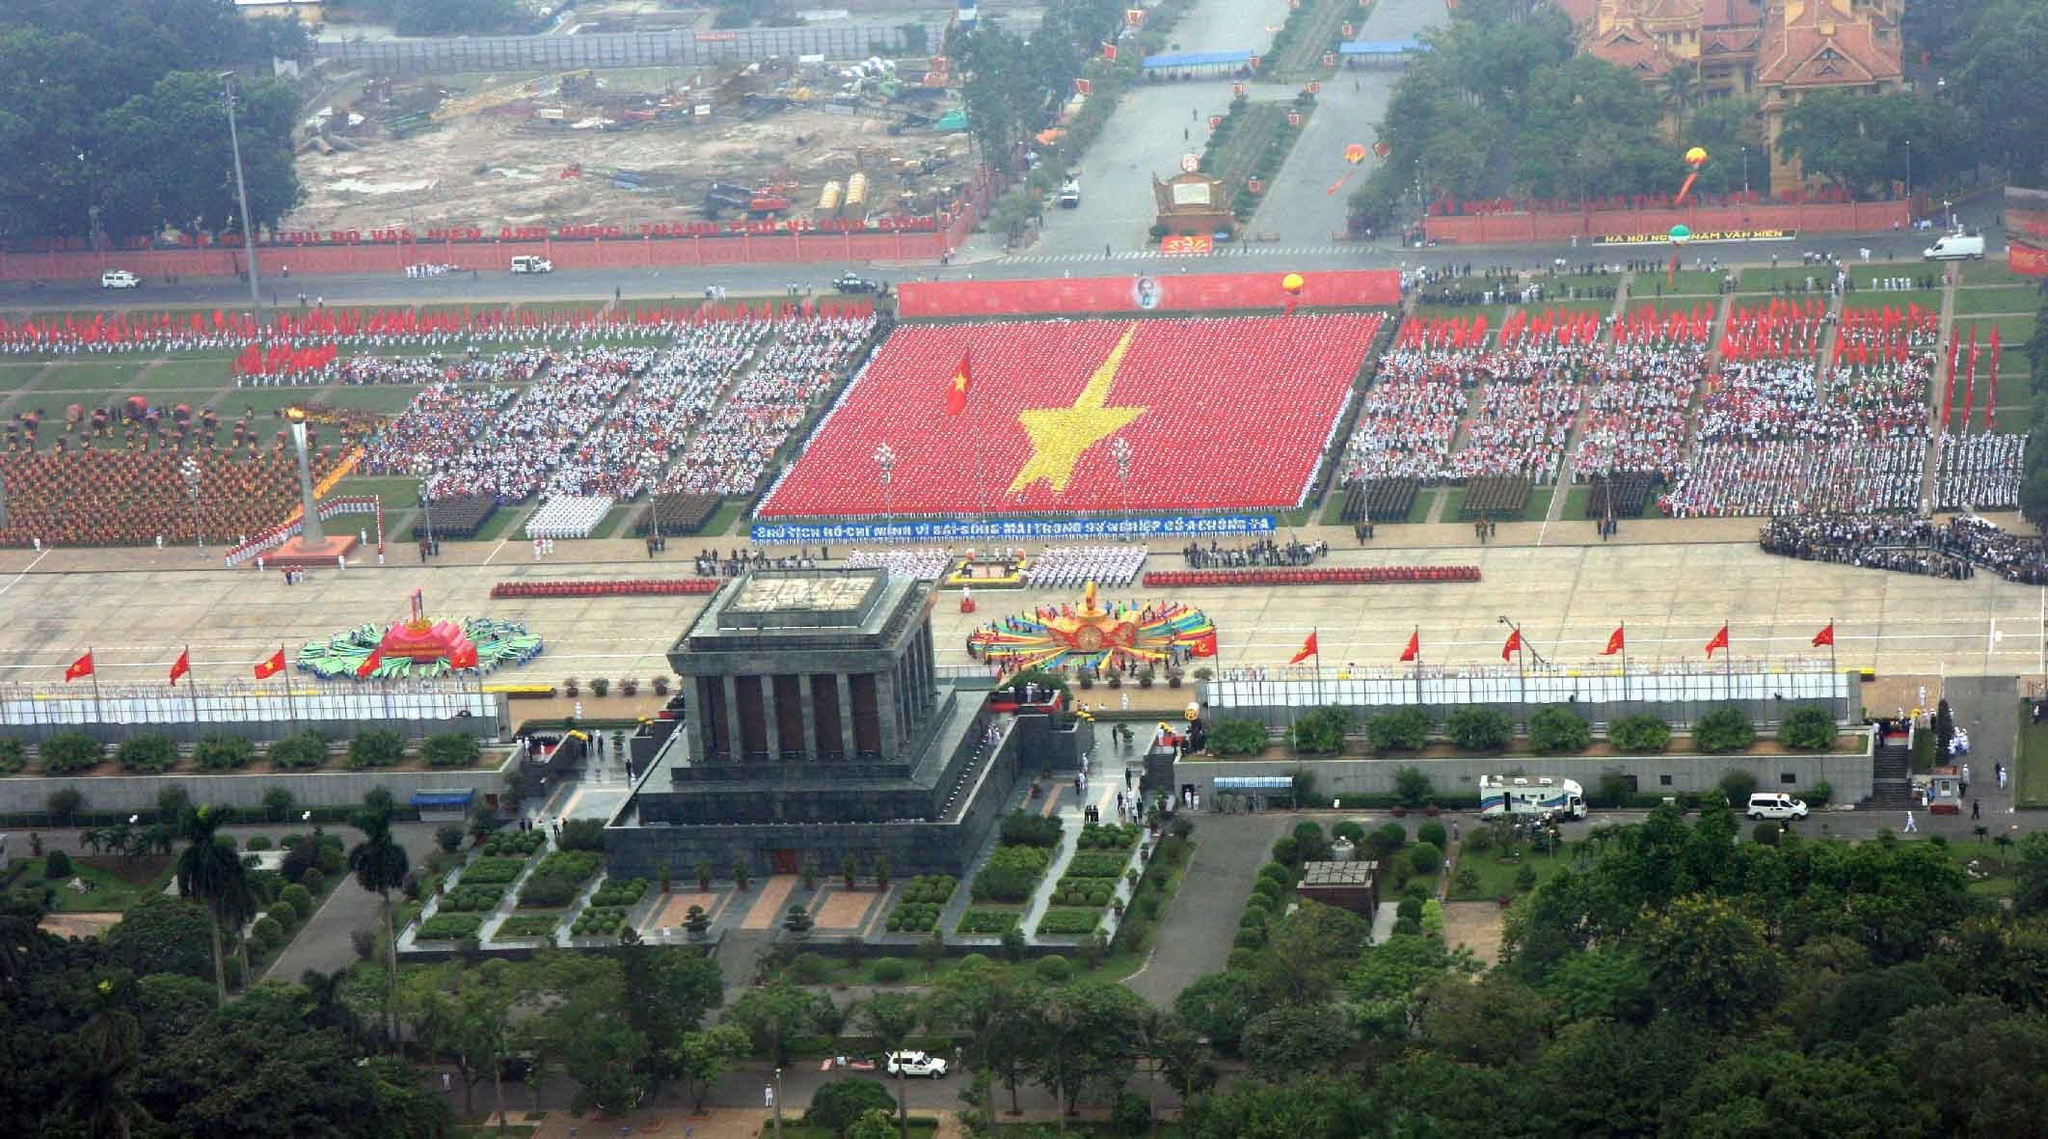 74 năm đã qua, tinh thần của Cách mạng Tháng Tám, chân lý của Chủ tịch Hồ Chí Minh: 'Không có gì quý hơn độc lập, tự do' vẫn luôn ngời sáng trong sự nghiệp đấu tranh giành độc lập, thống nhất, bảo vệ và thực hiện thắng lợi công cuộc xây dựng một nước Việt Nam hòa bình, thống nhất, độc lập, dân chủ và giàu mạnh của toàn dân tộc dưới sự lãnh đạo của Đảng Cộng sản Việt Nam quang vinh. (Ảnh: Trọng Đức/TTXVN)